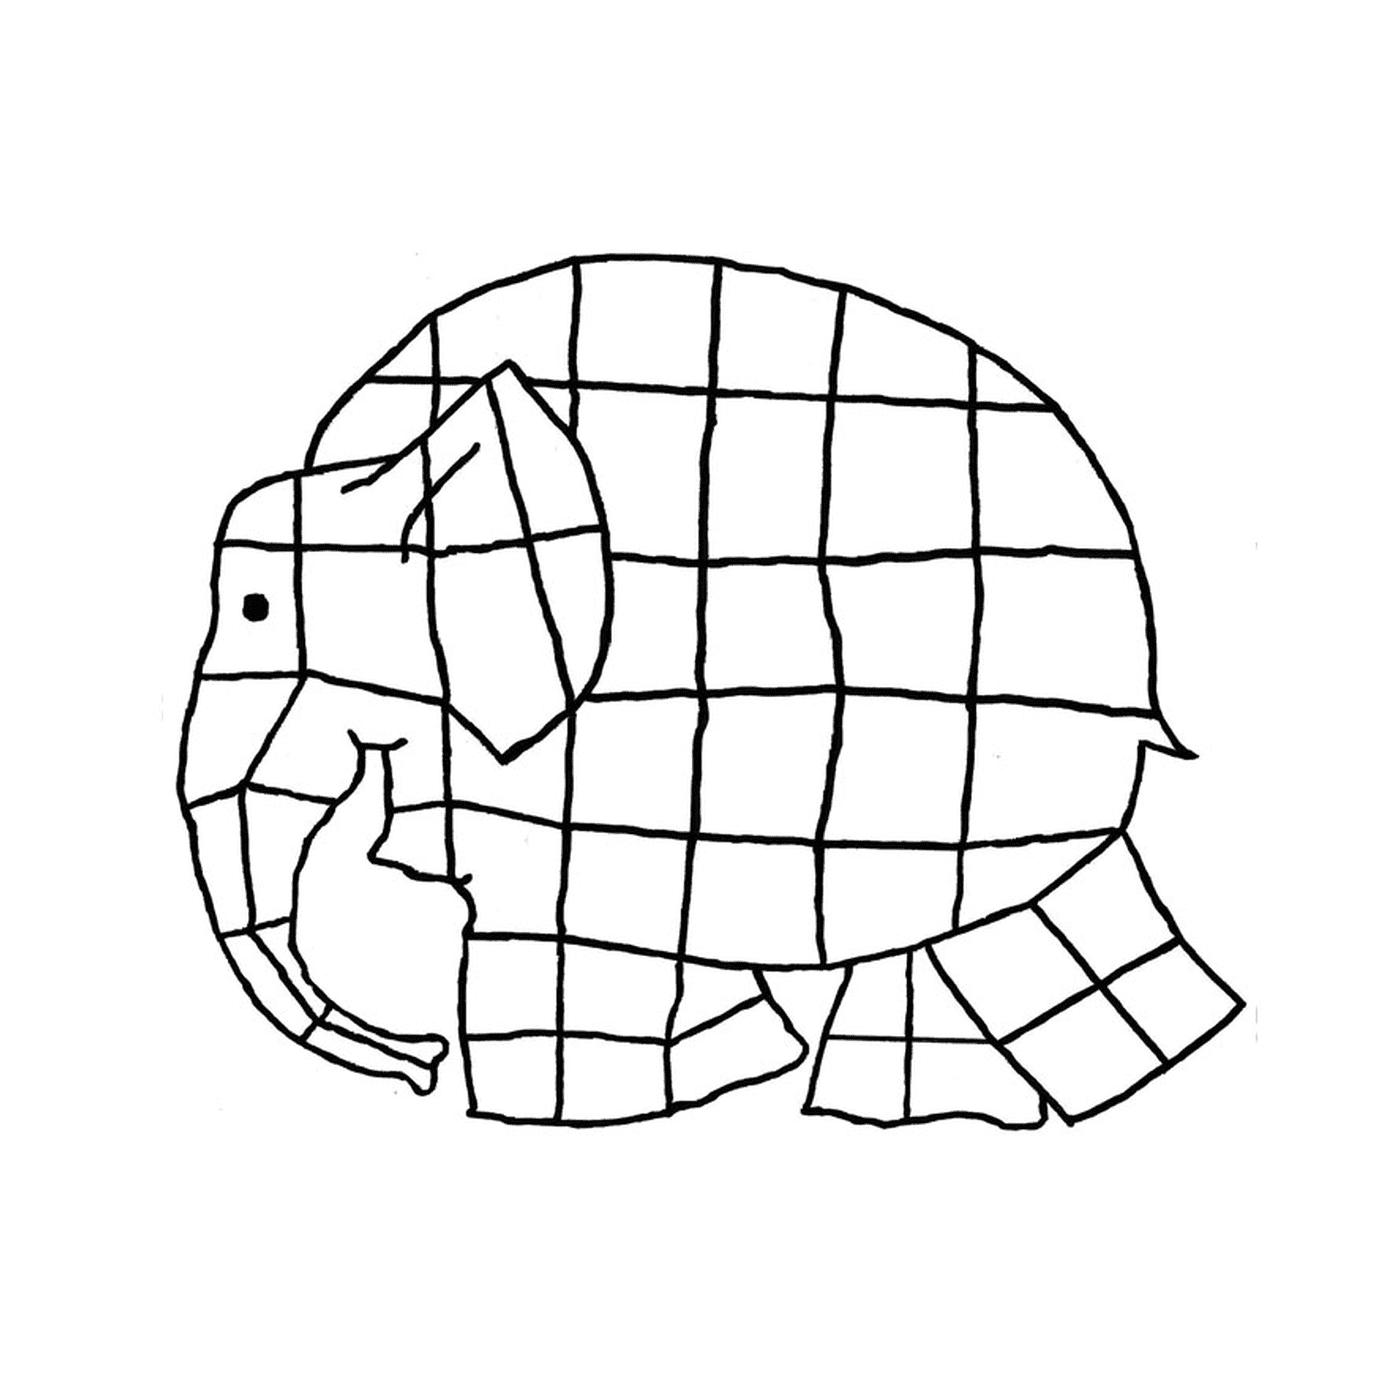  大象由方块制成 